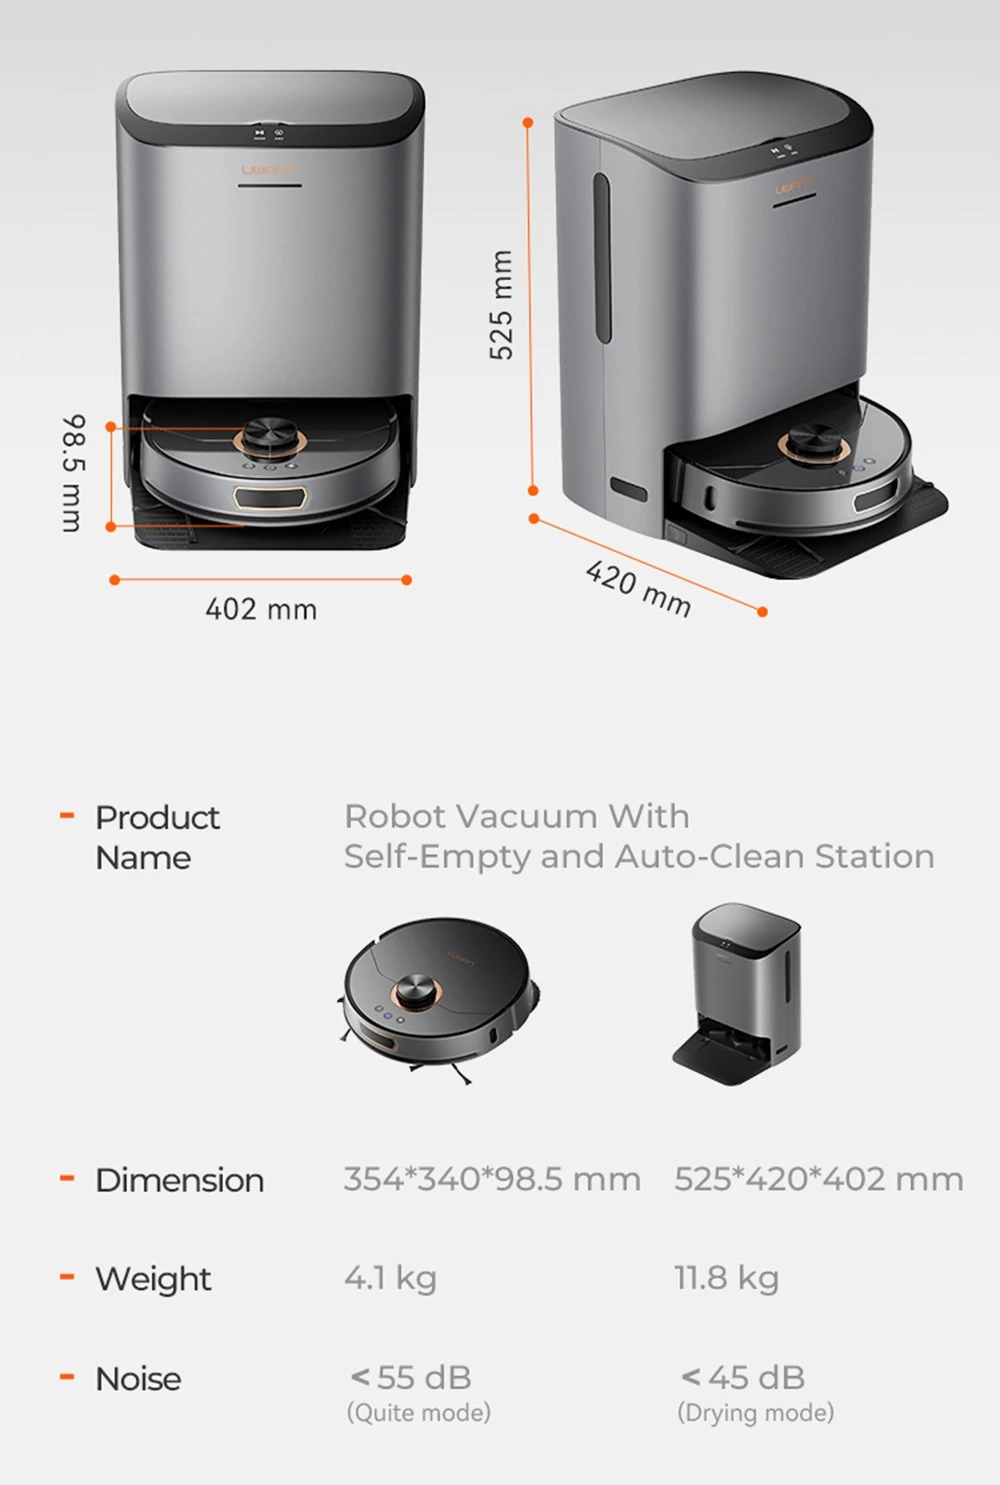 https://img.gkbcdn.com/d/202306/UWANT-U200-Robot-Vacuum-Cleaner-Grey-520861-36._p1_.jpg